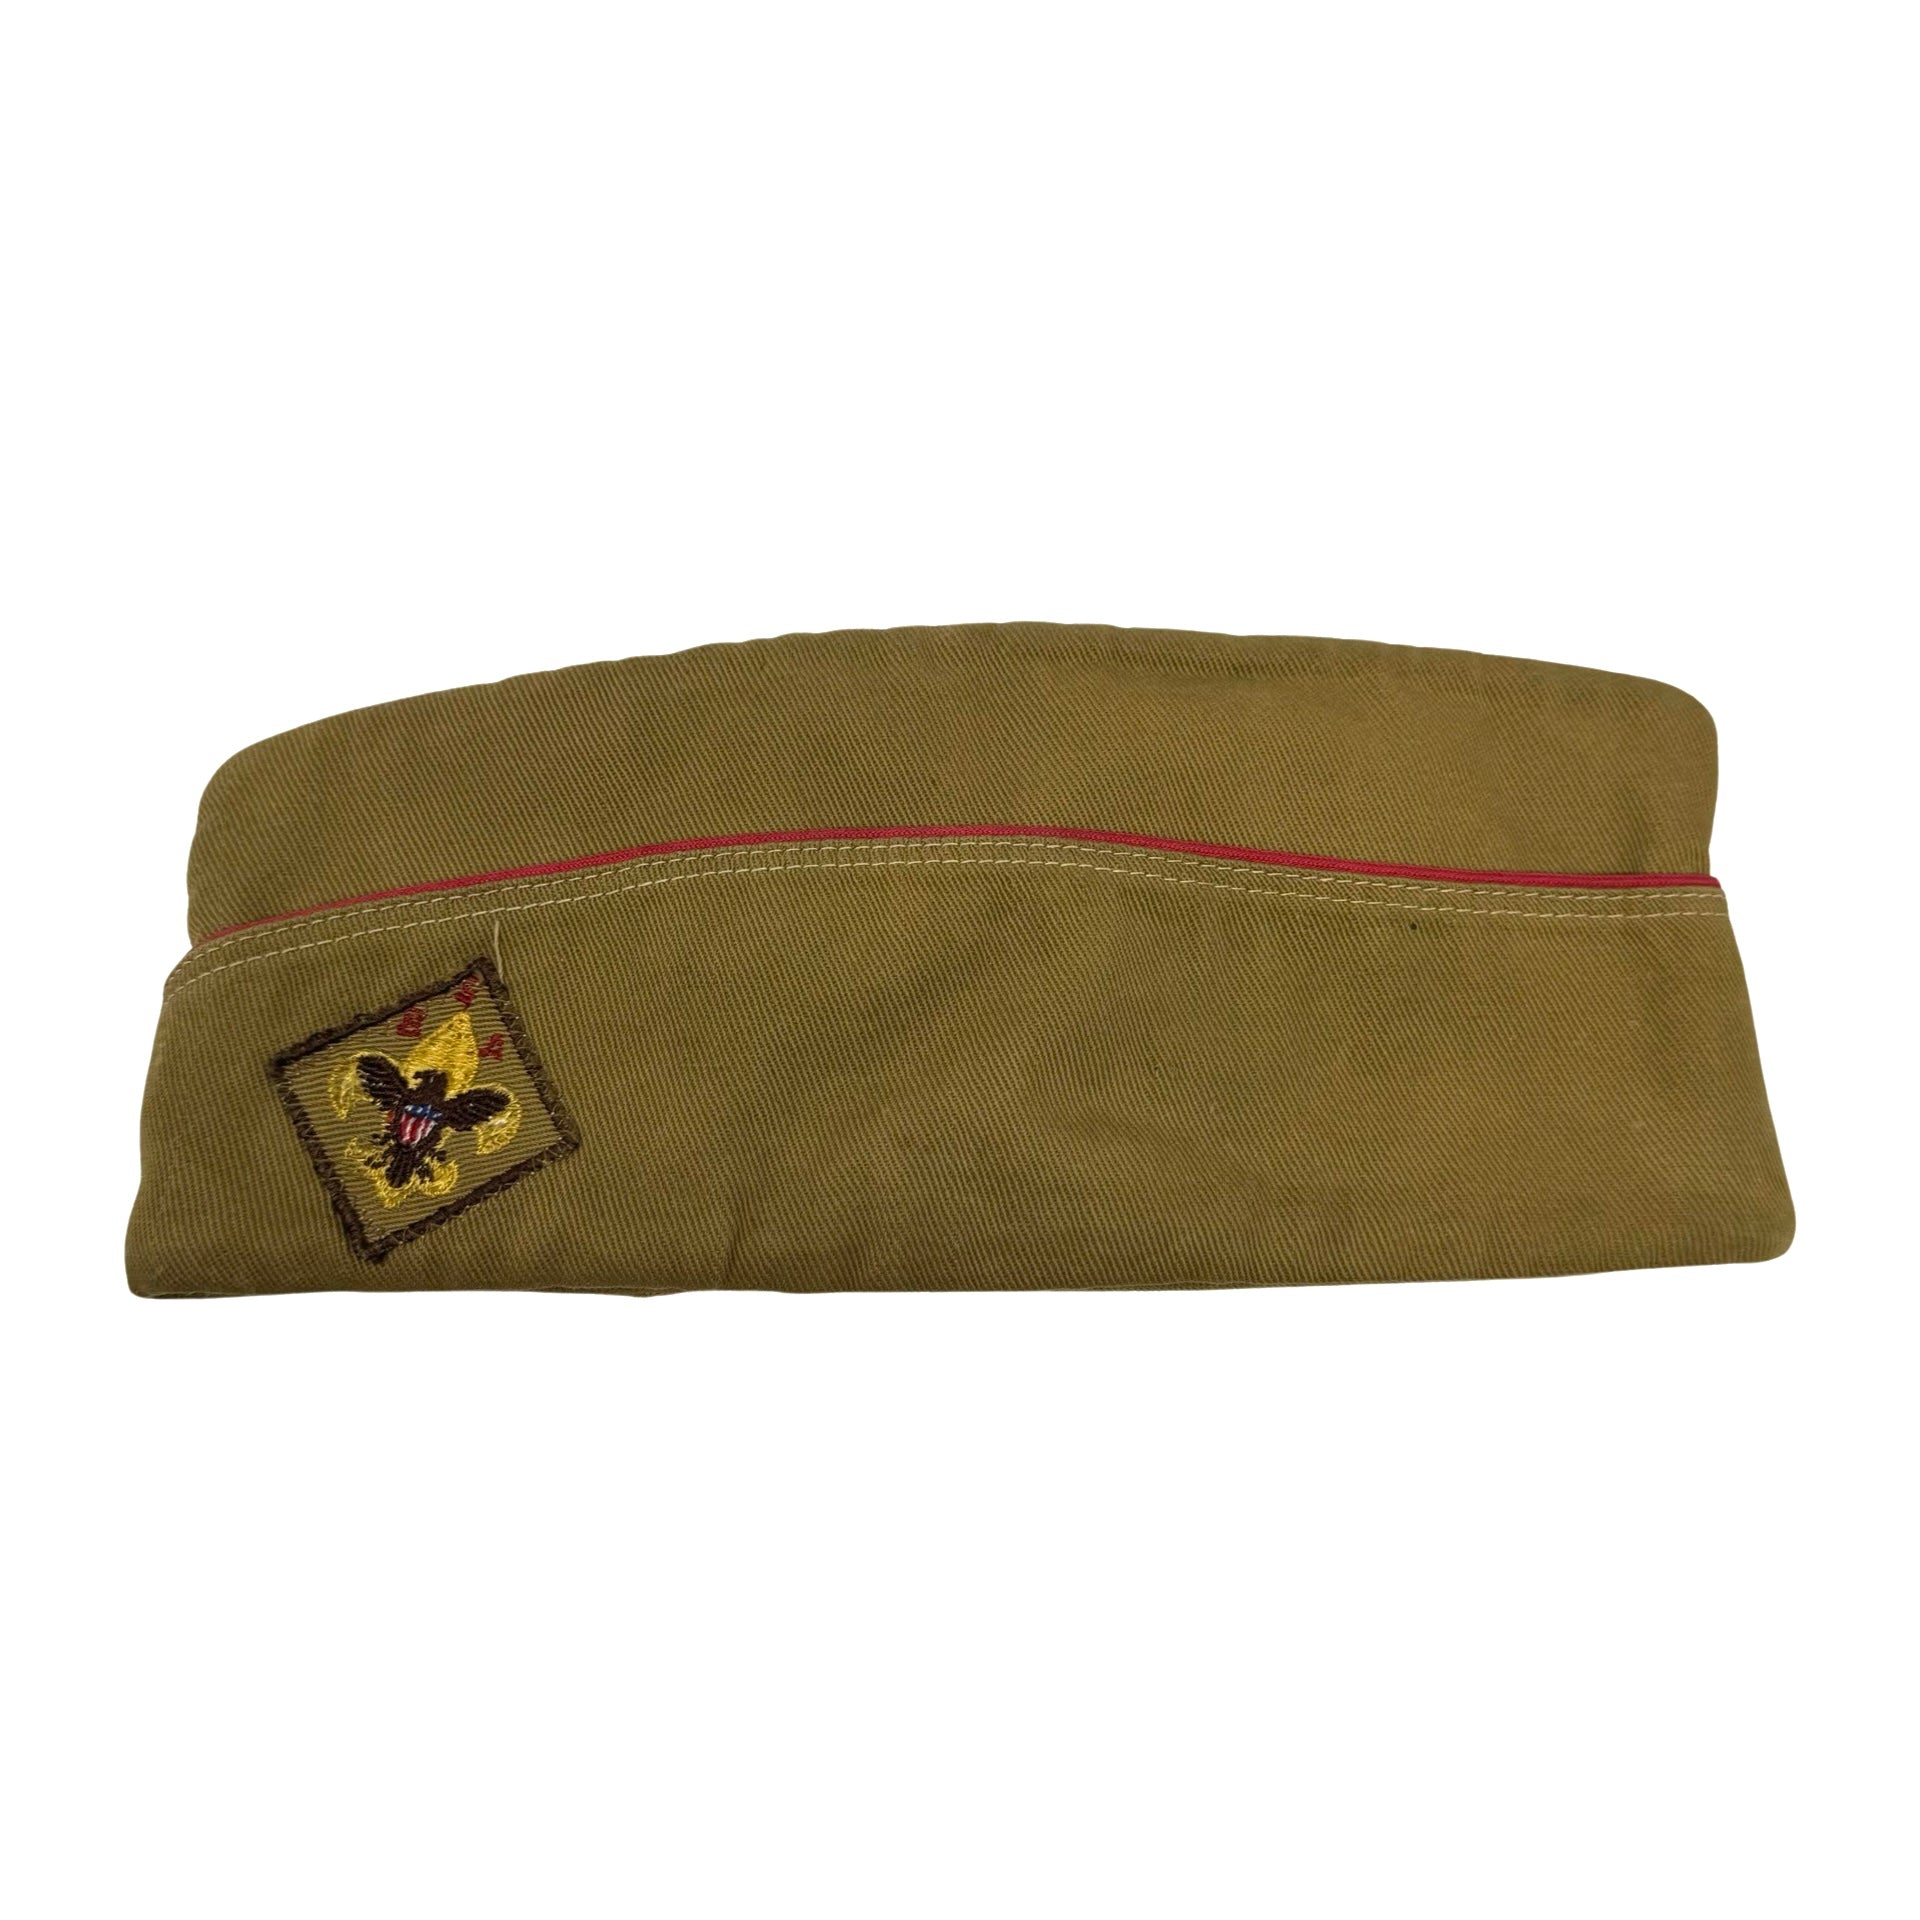 Vintage Boy Scouts of America Patch Uniform Hat